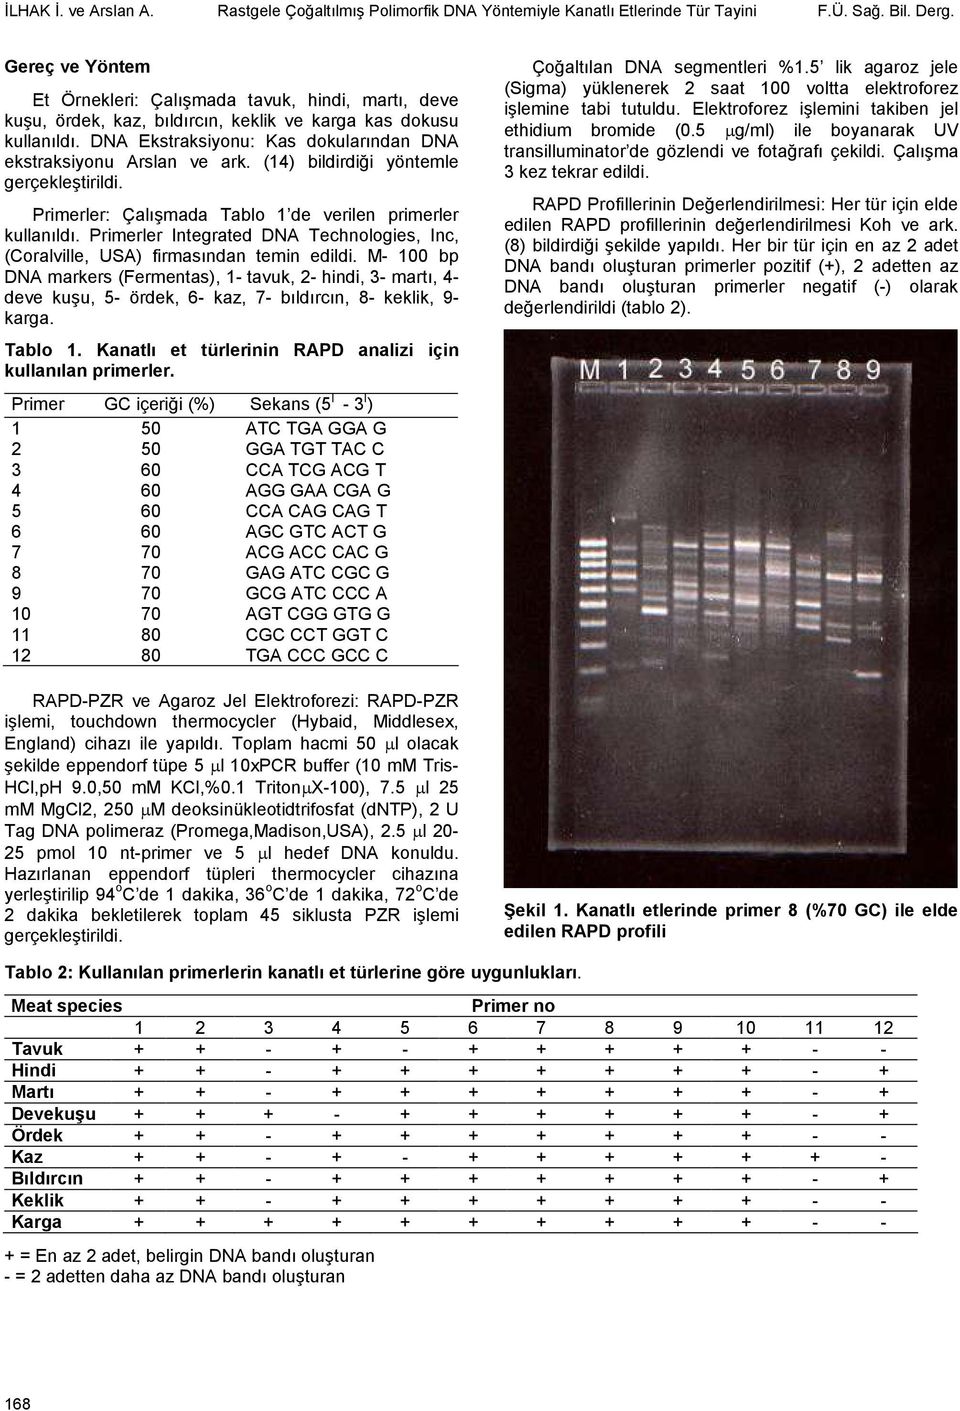 DNA Ekstraksiyonu: Kas dokularından DNA ekstraksiyonu Arslan ve ark. (14) bildirdiği yöntemle gerçekleştirildi. Primerler: Çalışmada Tablo 1 de verilen primerler kullanıldı.